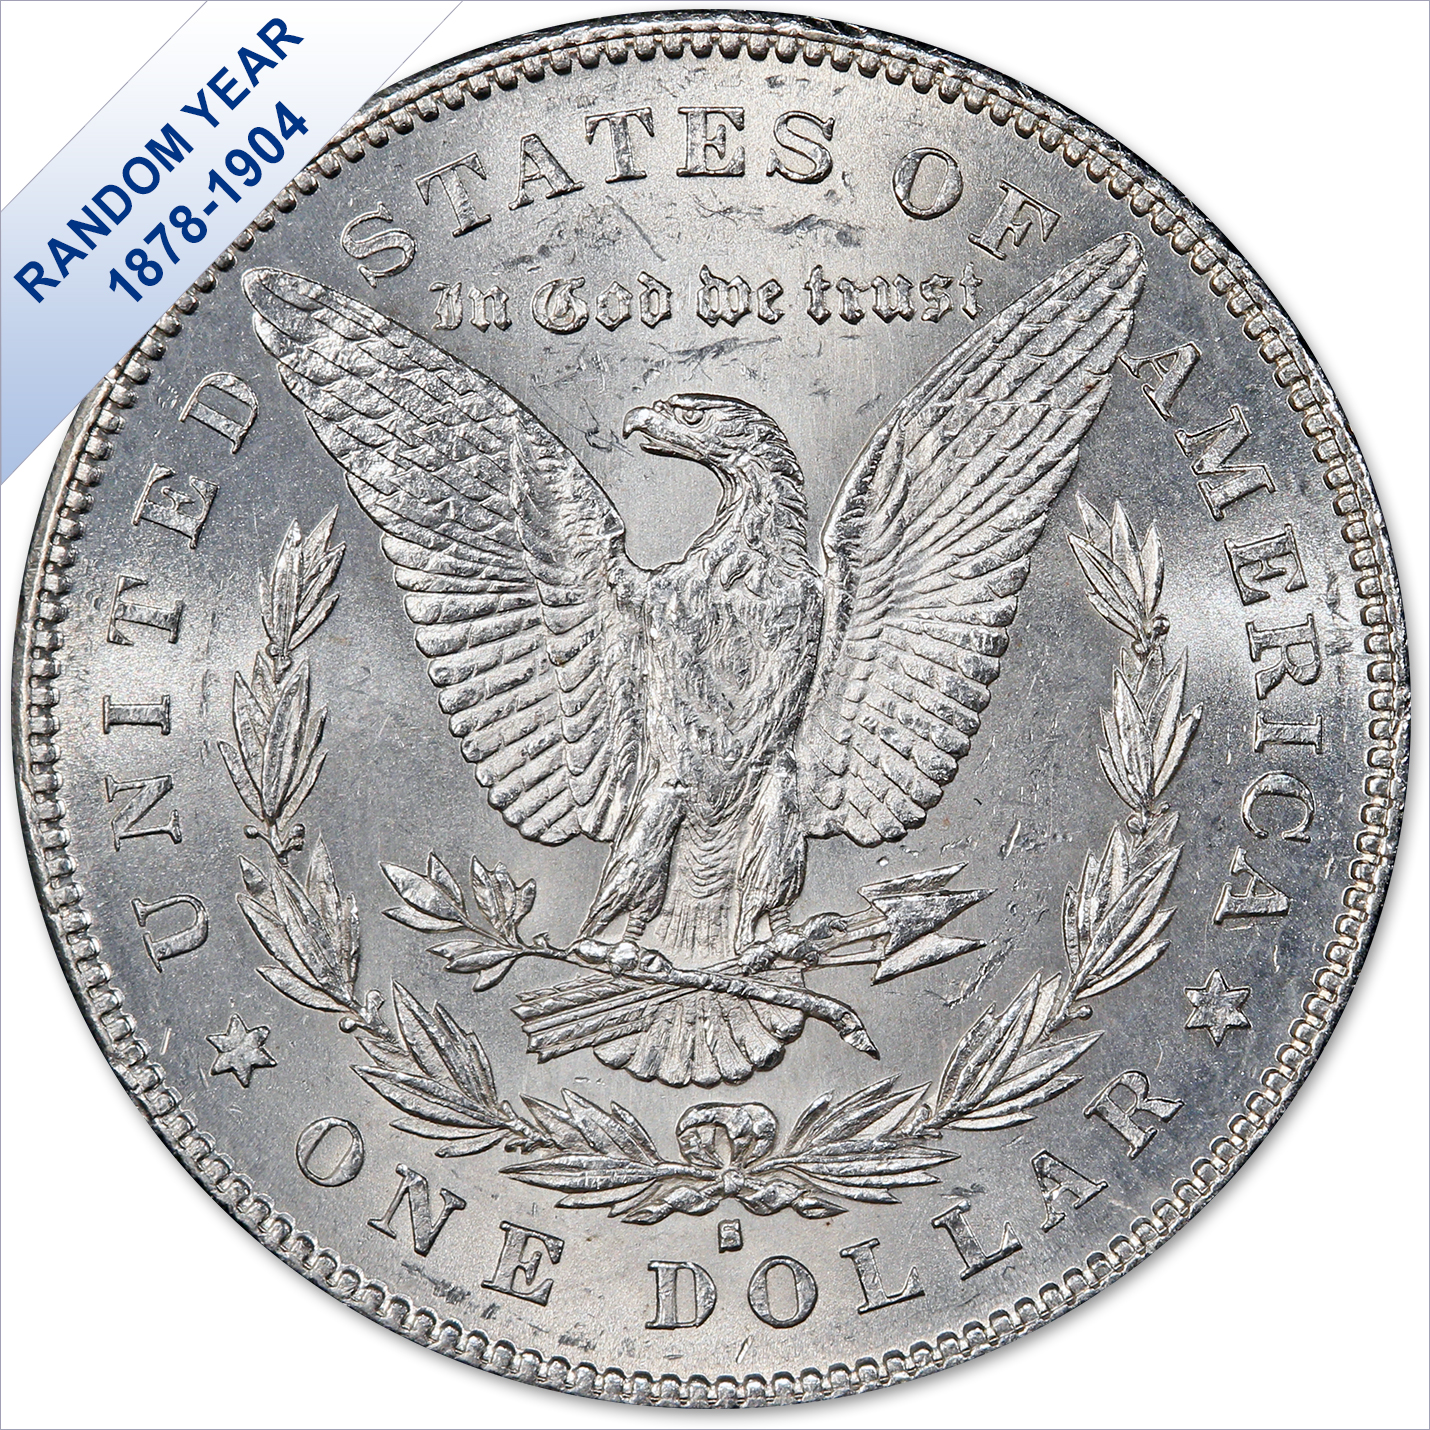 1884-O Morgan Silver Dollar Brilliant Uncirculated (BU) - Legacy Coins &  Capital, LLC